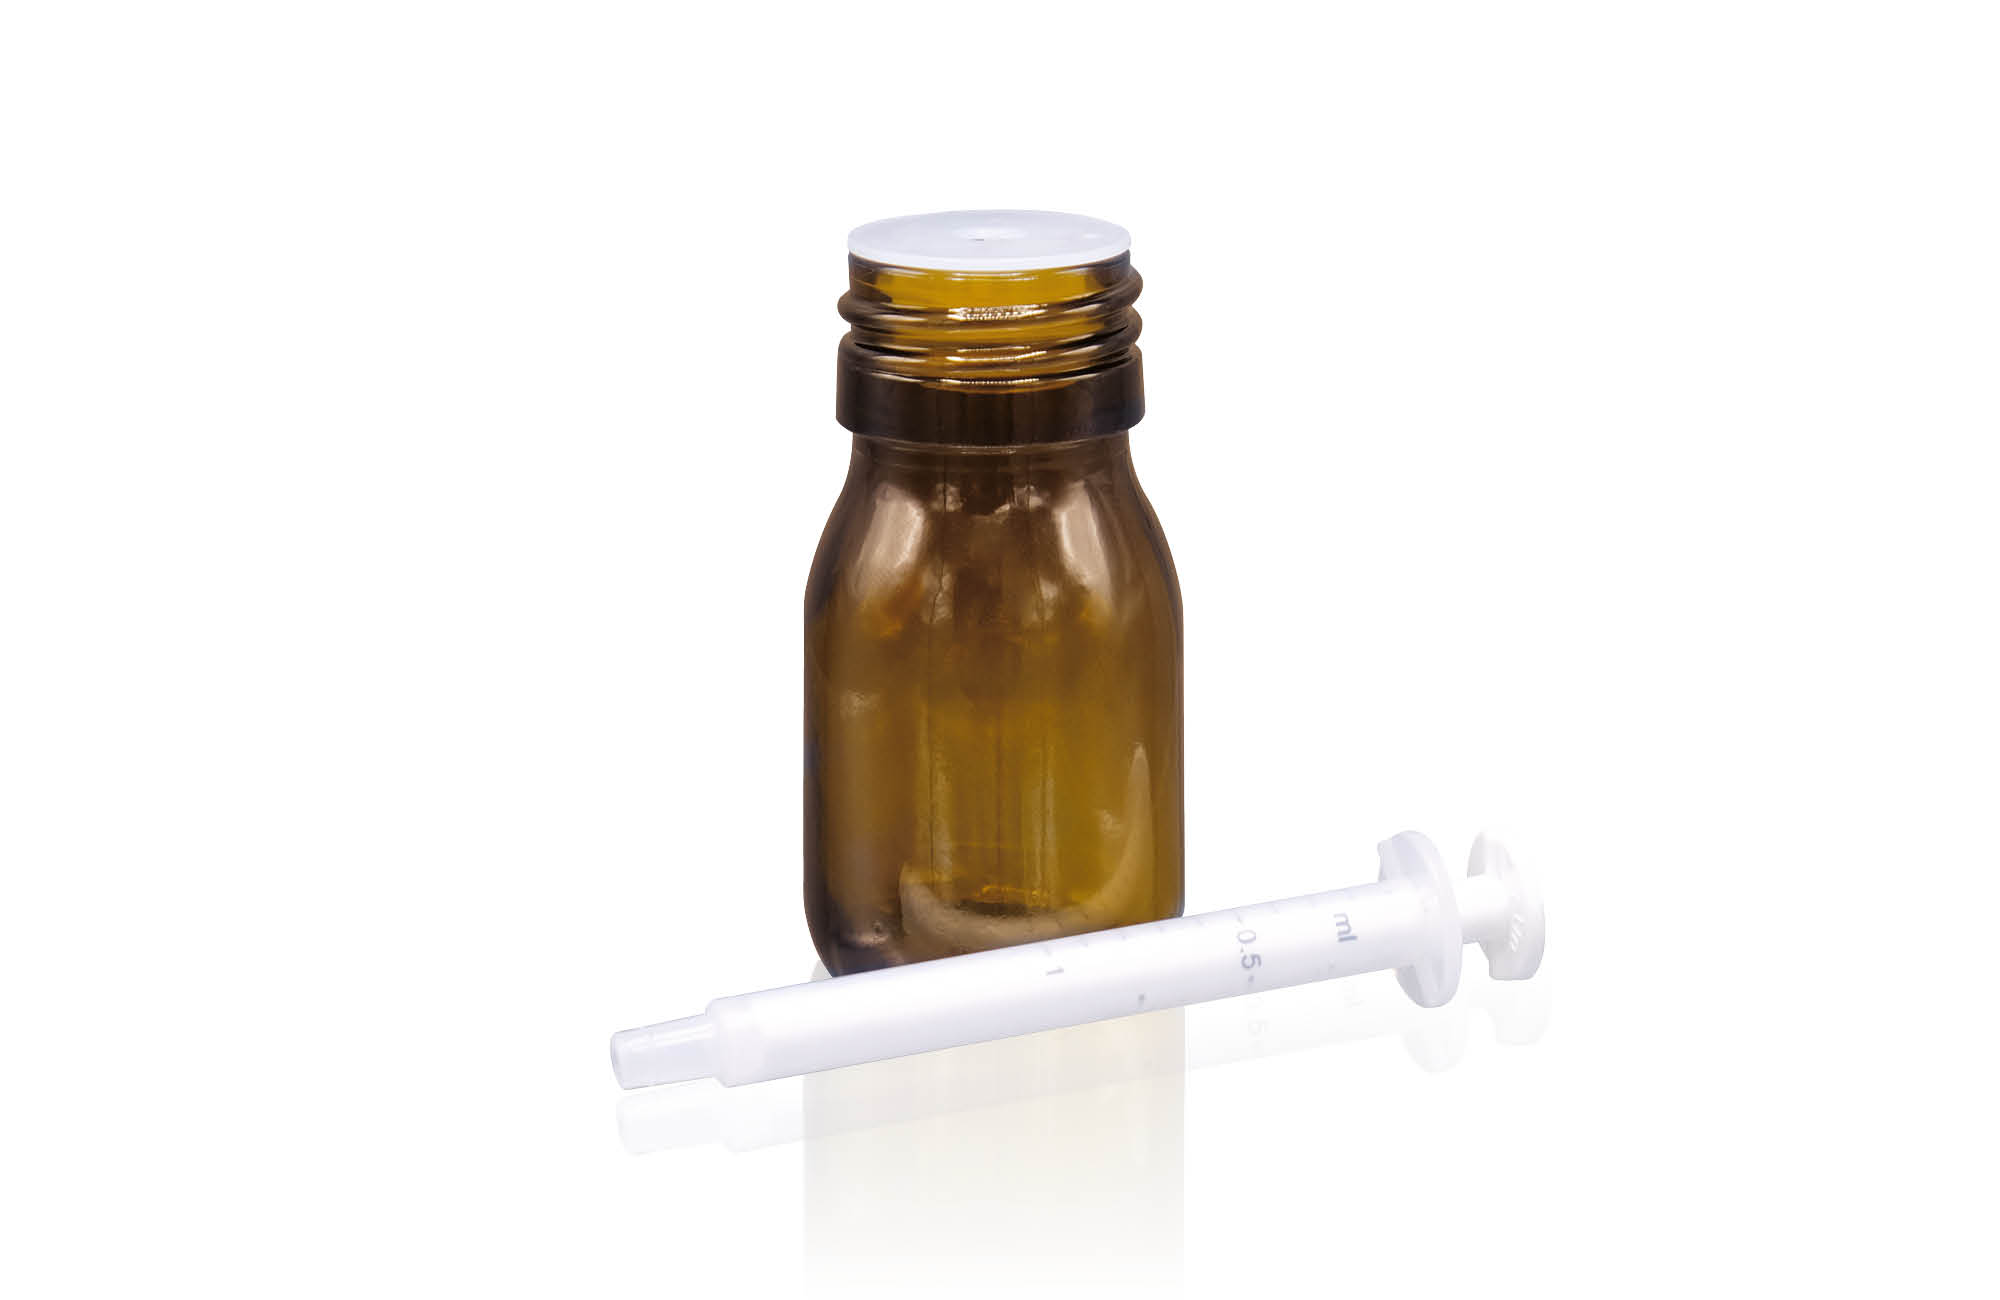 White dosing syringe with amber glass bottle